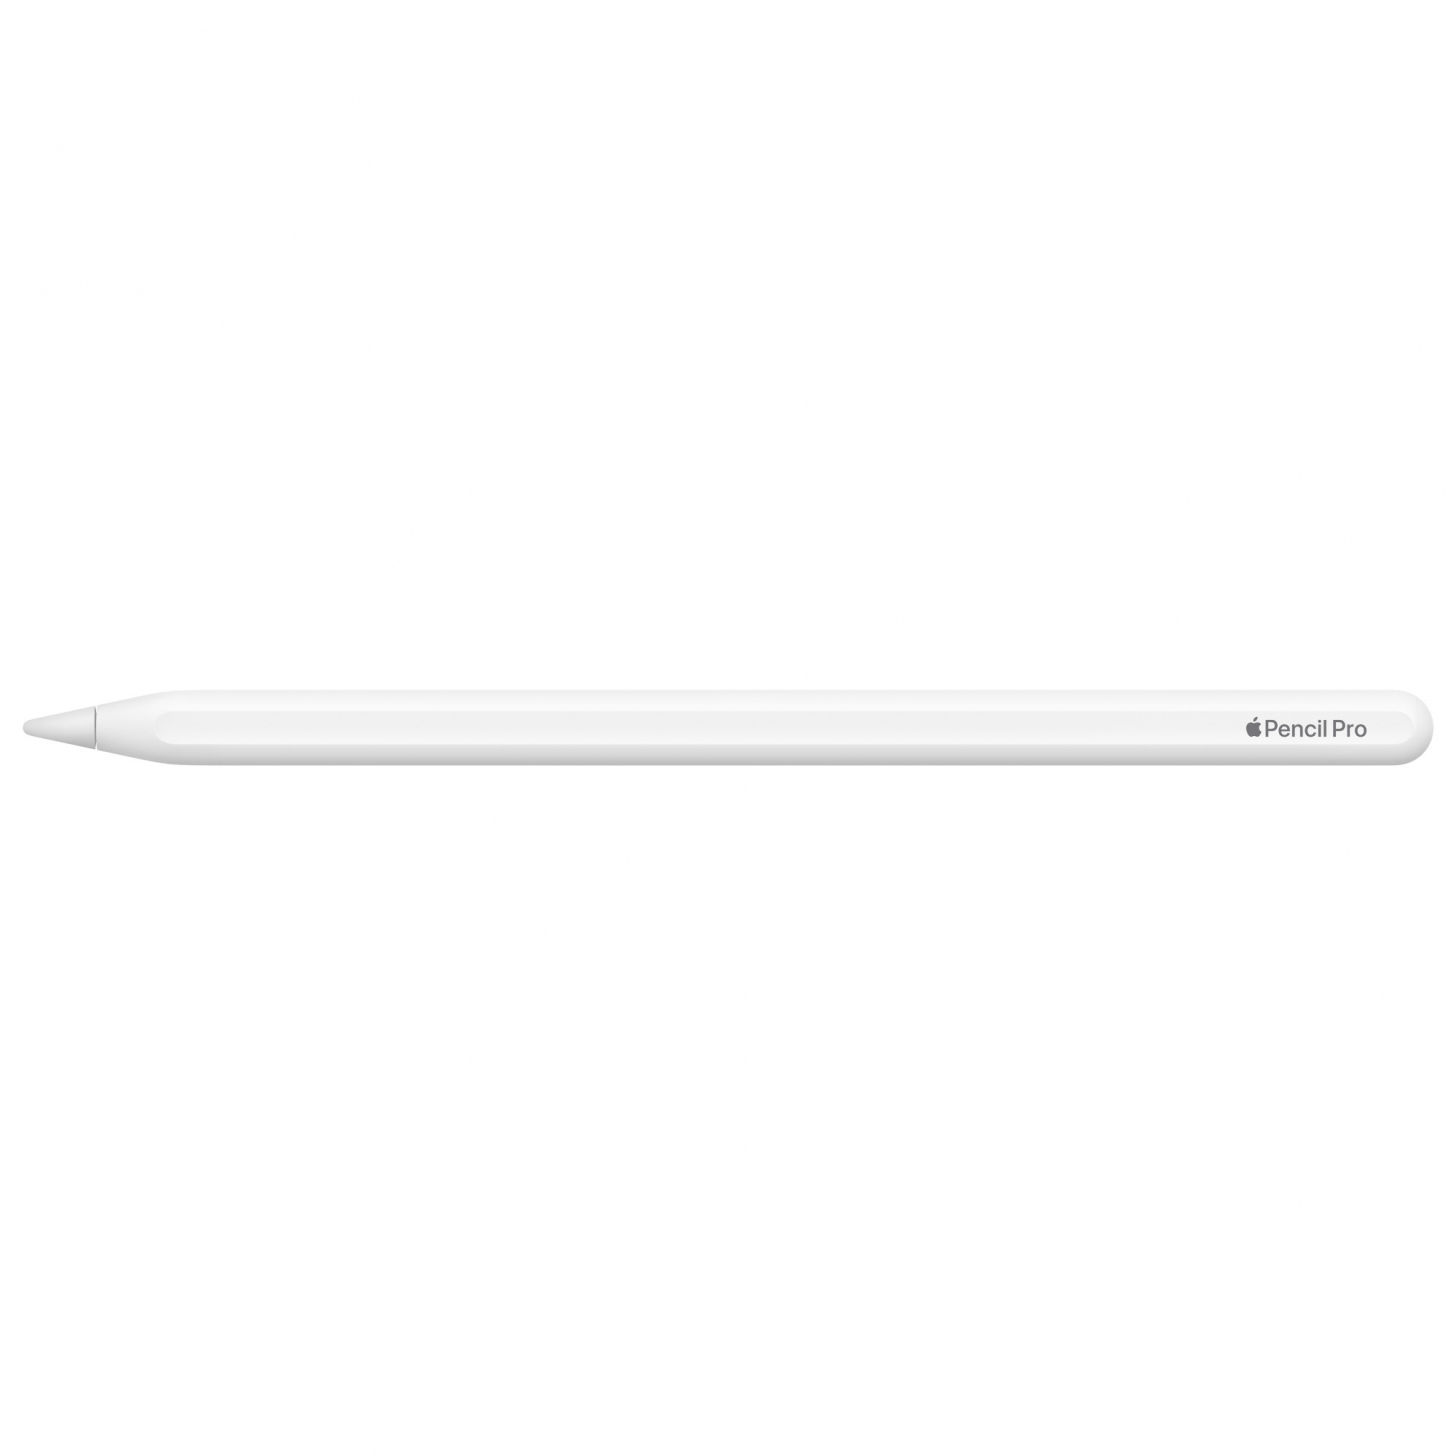 O mais recente Apple Pencil Pro